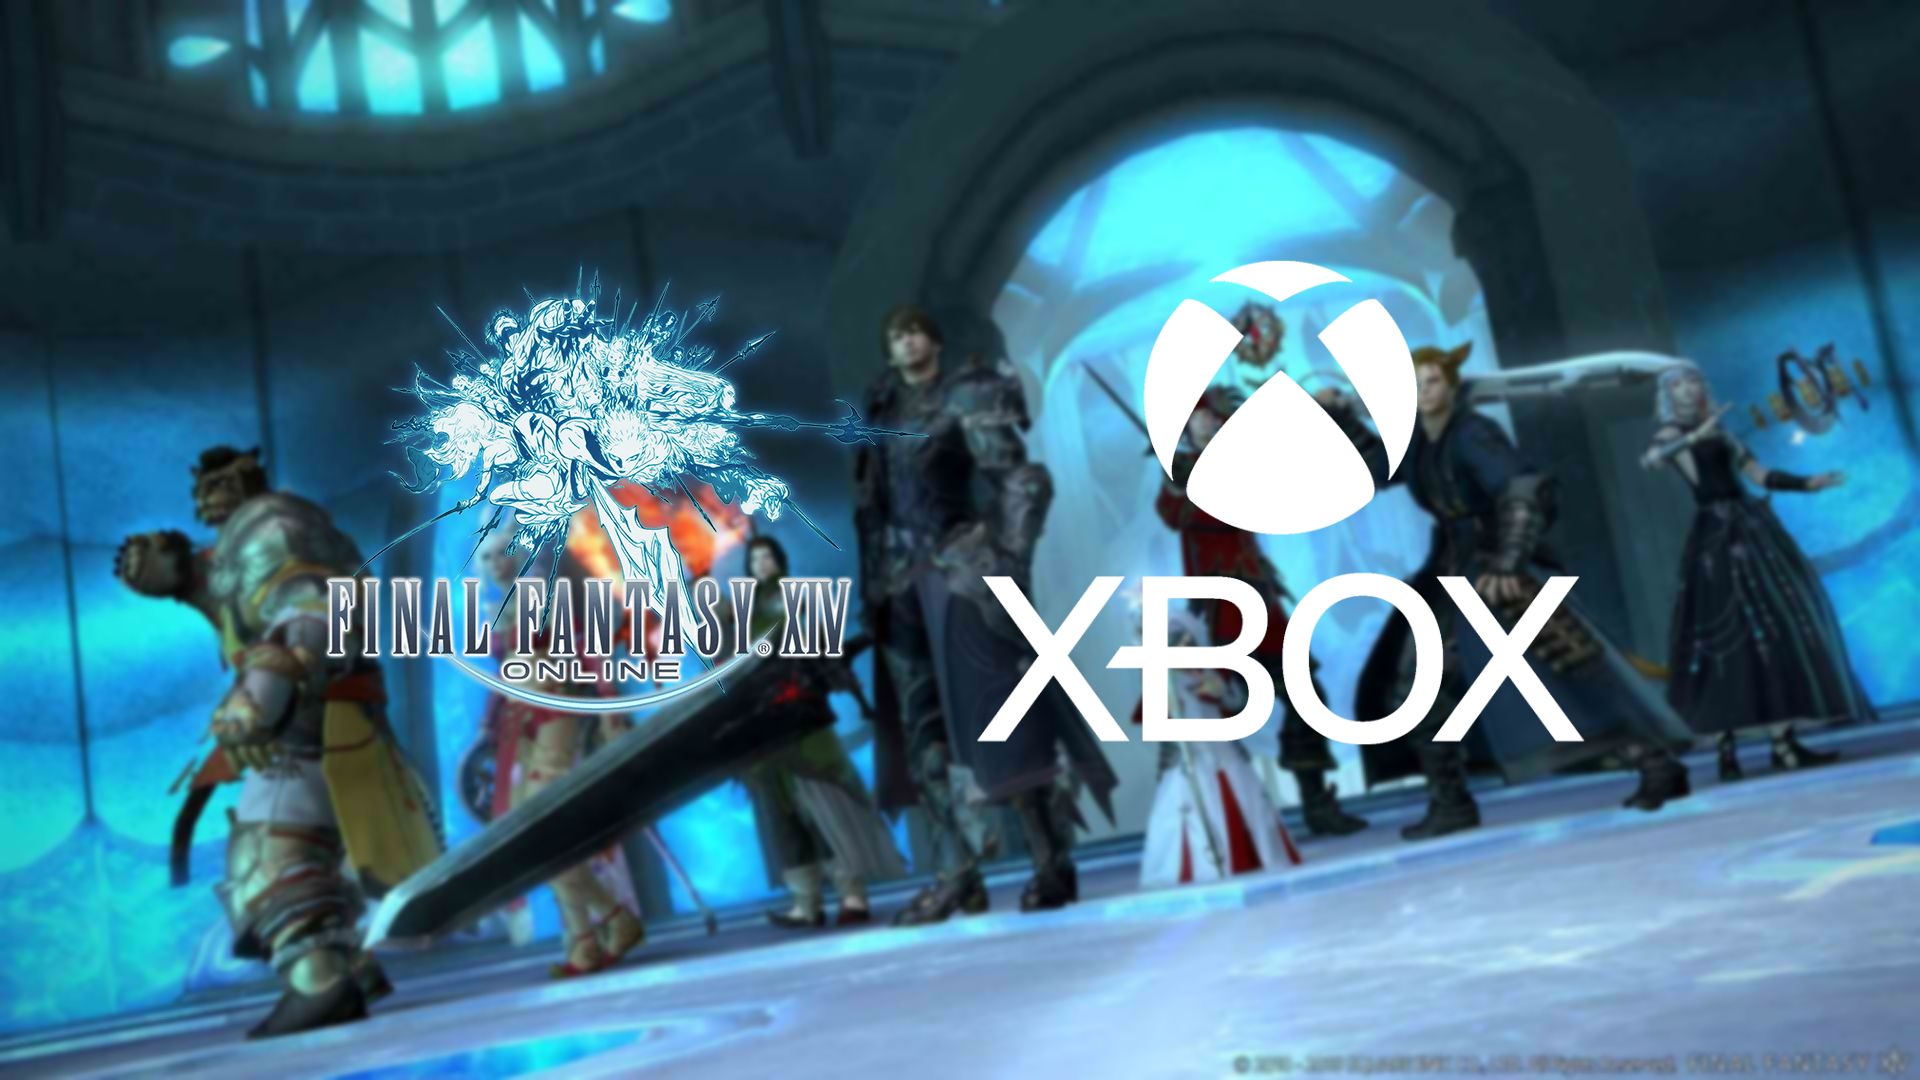 Final Fantasy XIV and future Square Enix games will come to Xbox